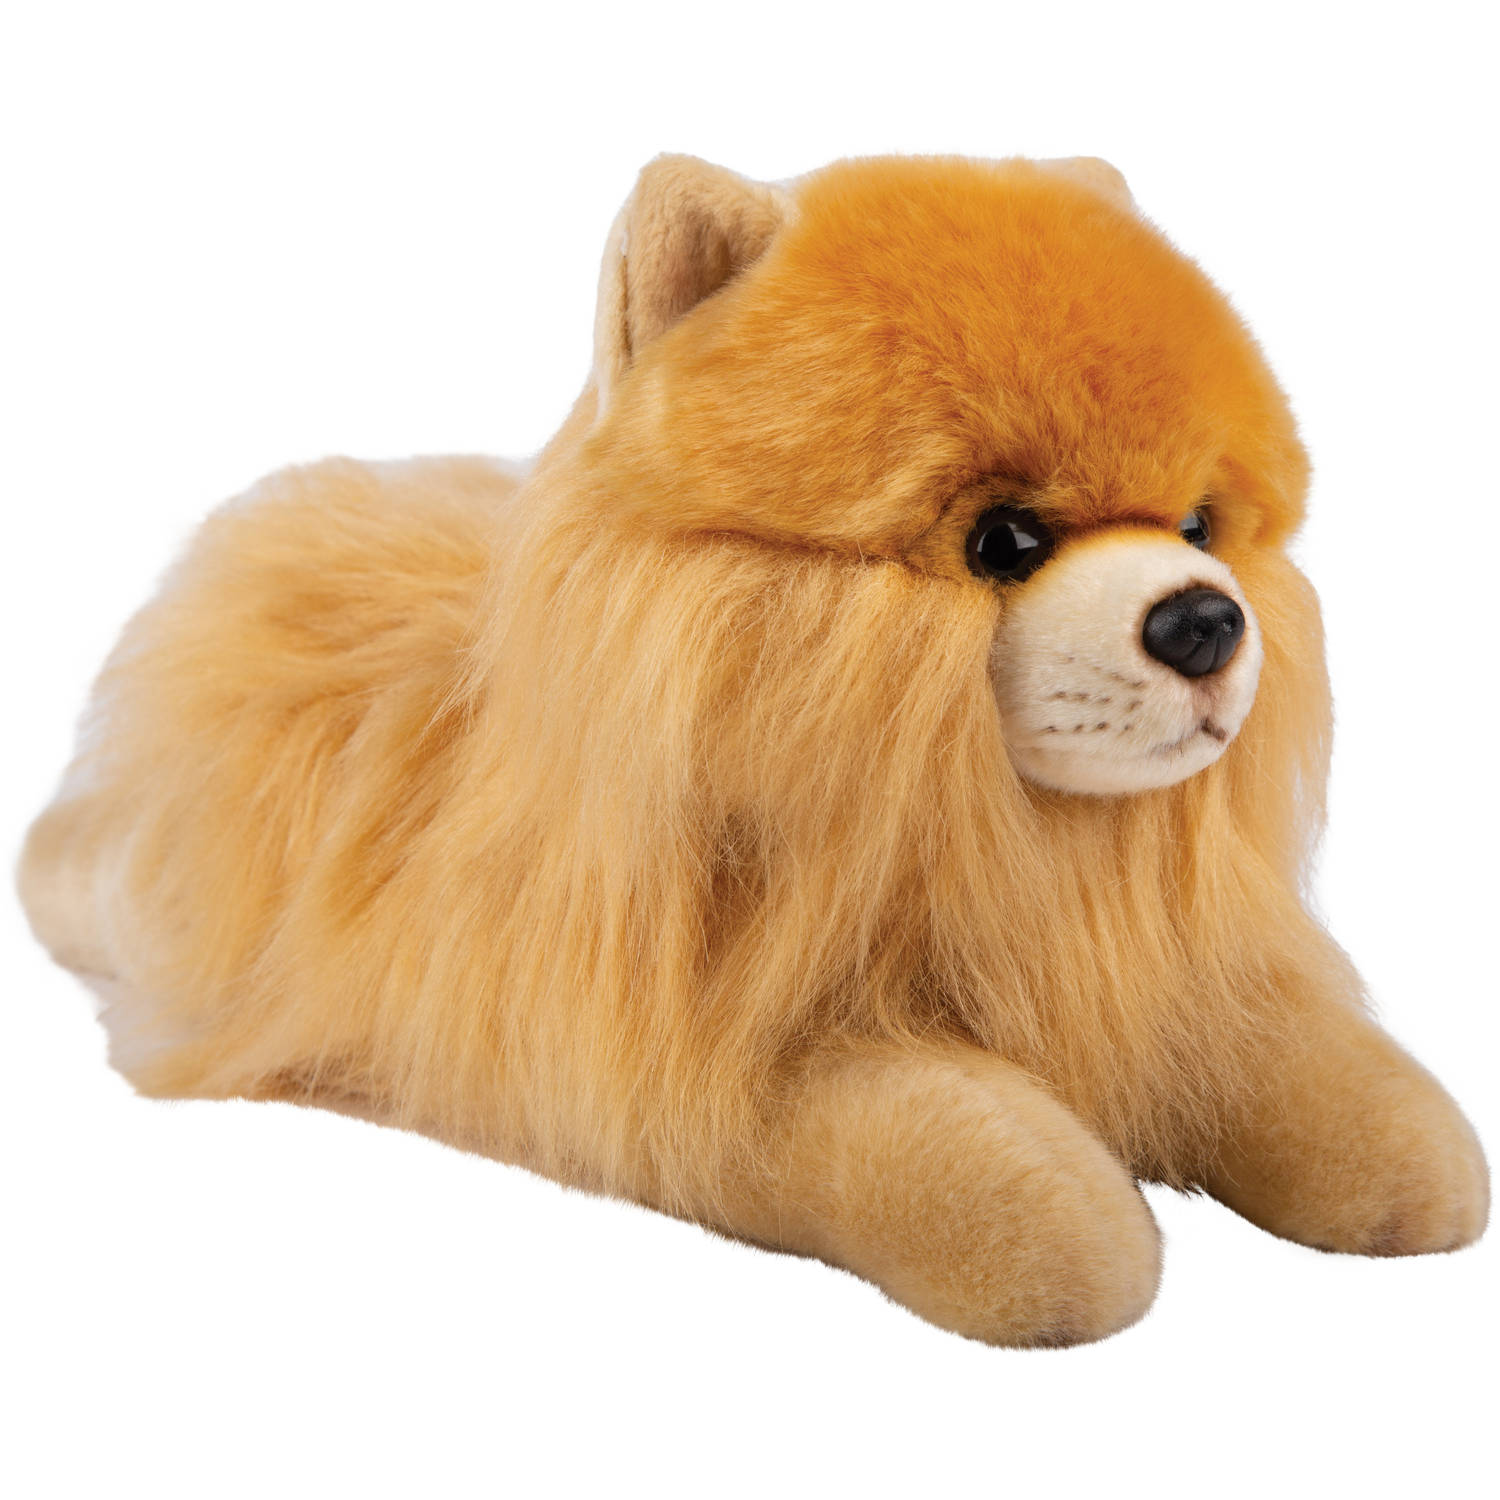 Pluche knuffel dieren Pomeranian/dwergkeeshond 30 cm - Speelgoed knuffelbeesten - Honden soorten